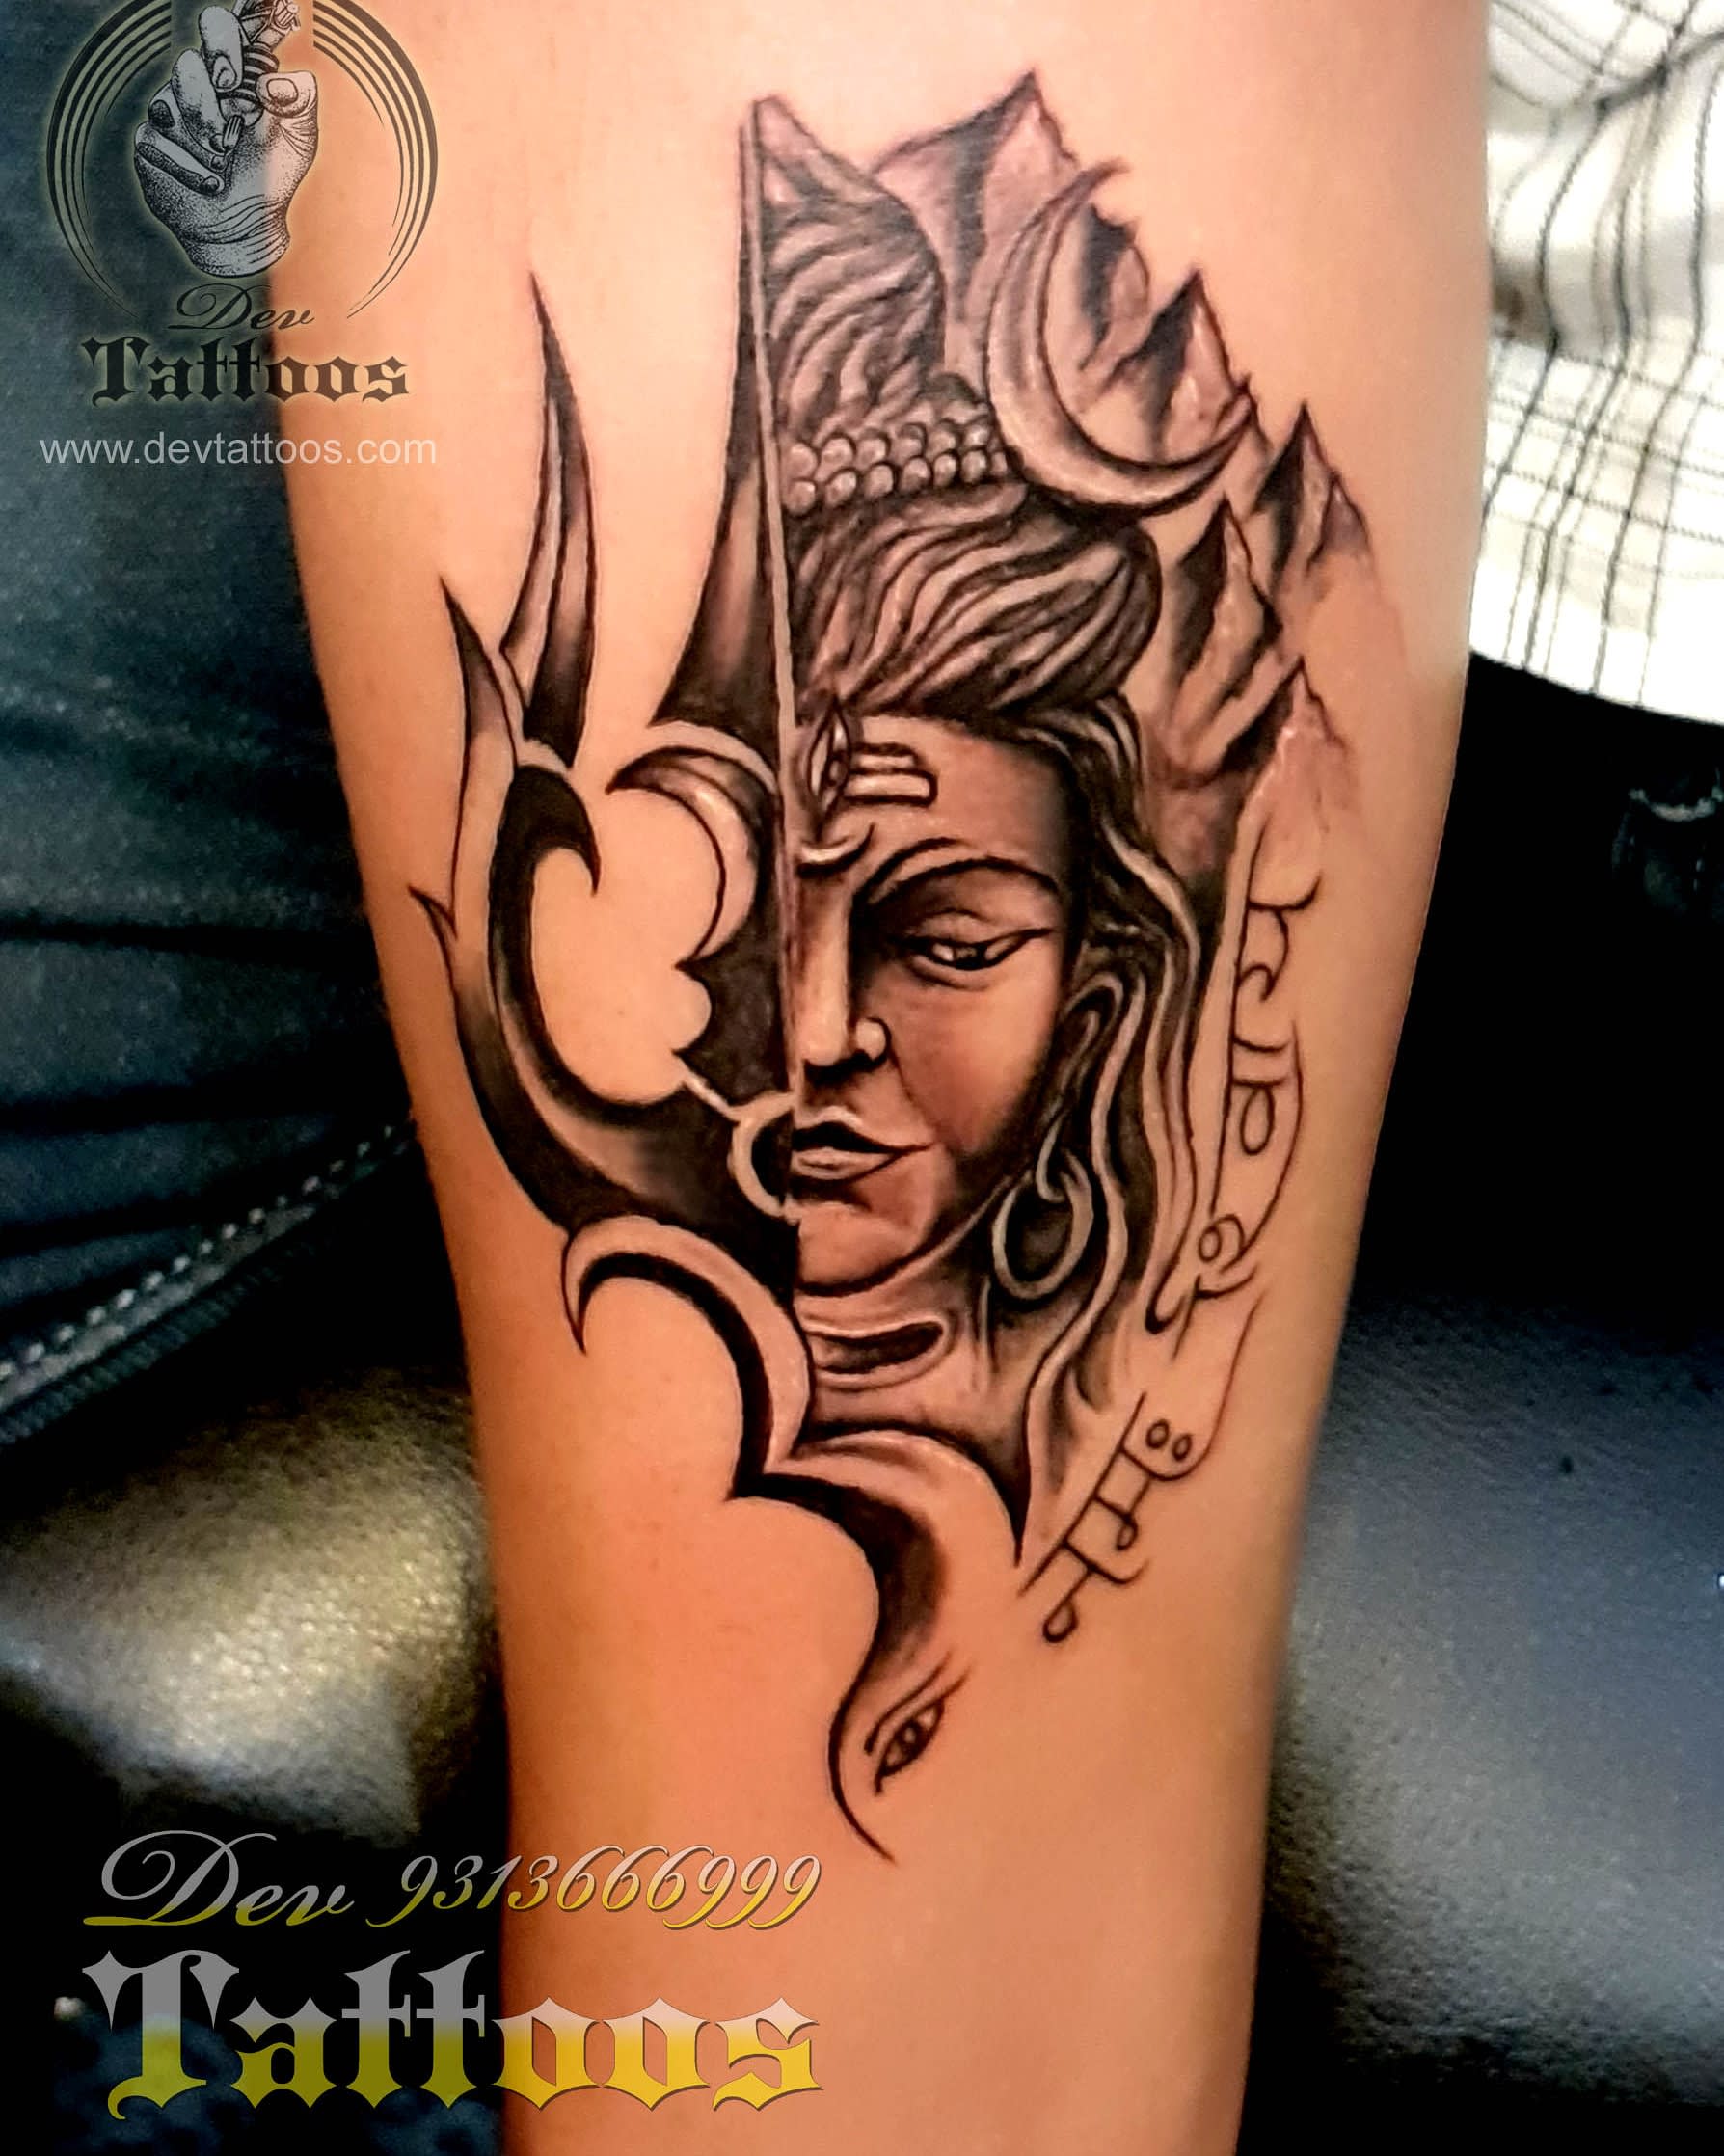 Shree Ram Tattoo  Lord Shree Ram Tattoo  Jay Shree Ram Tattoo  Hand  Tattoo  YouTube